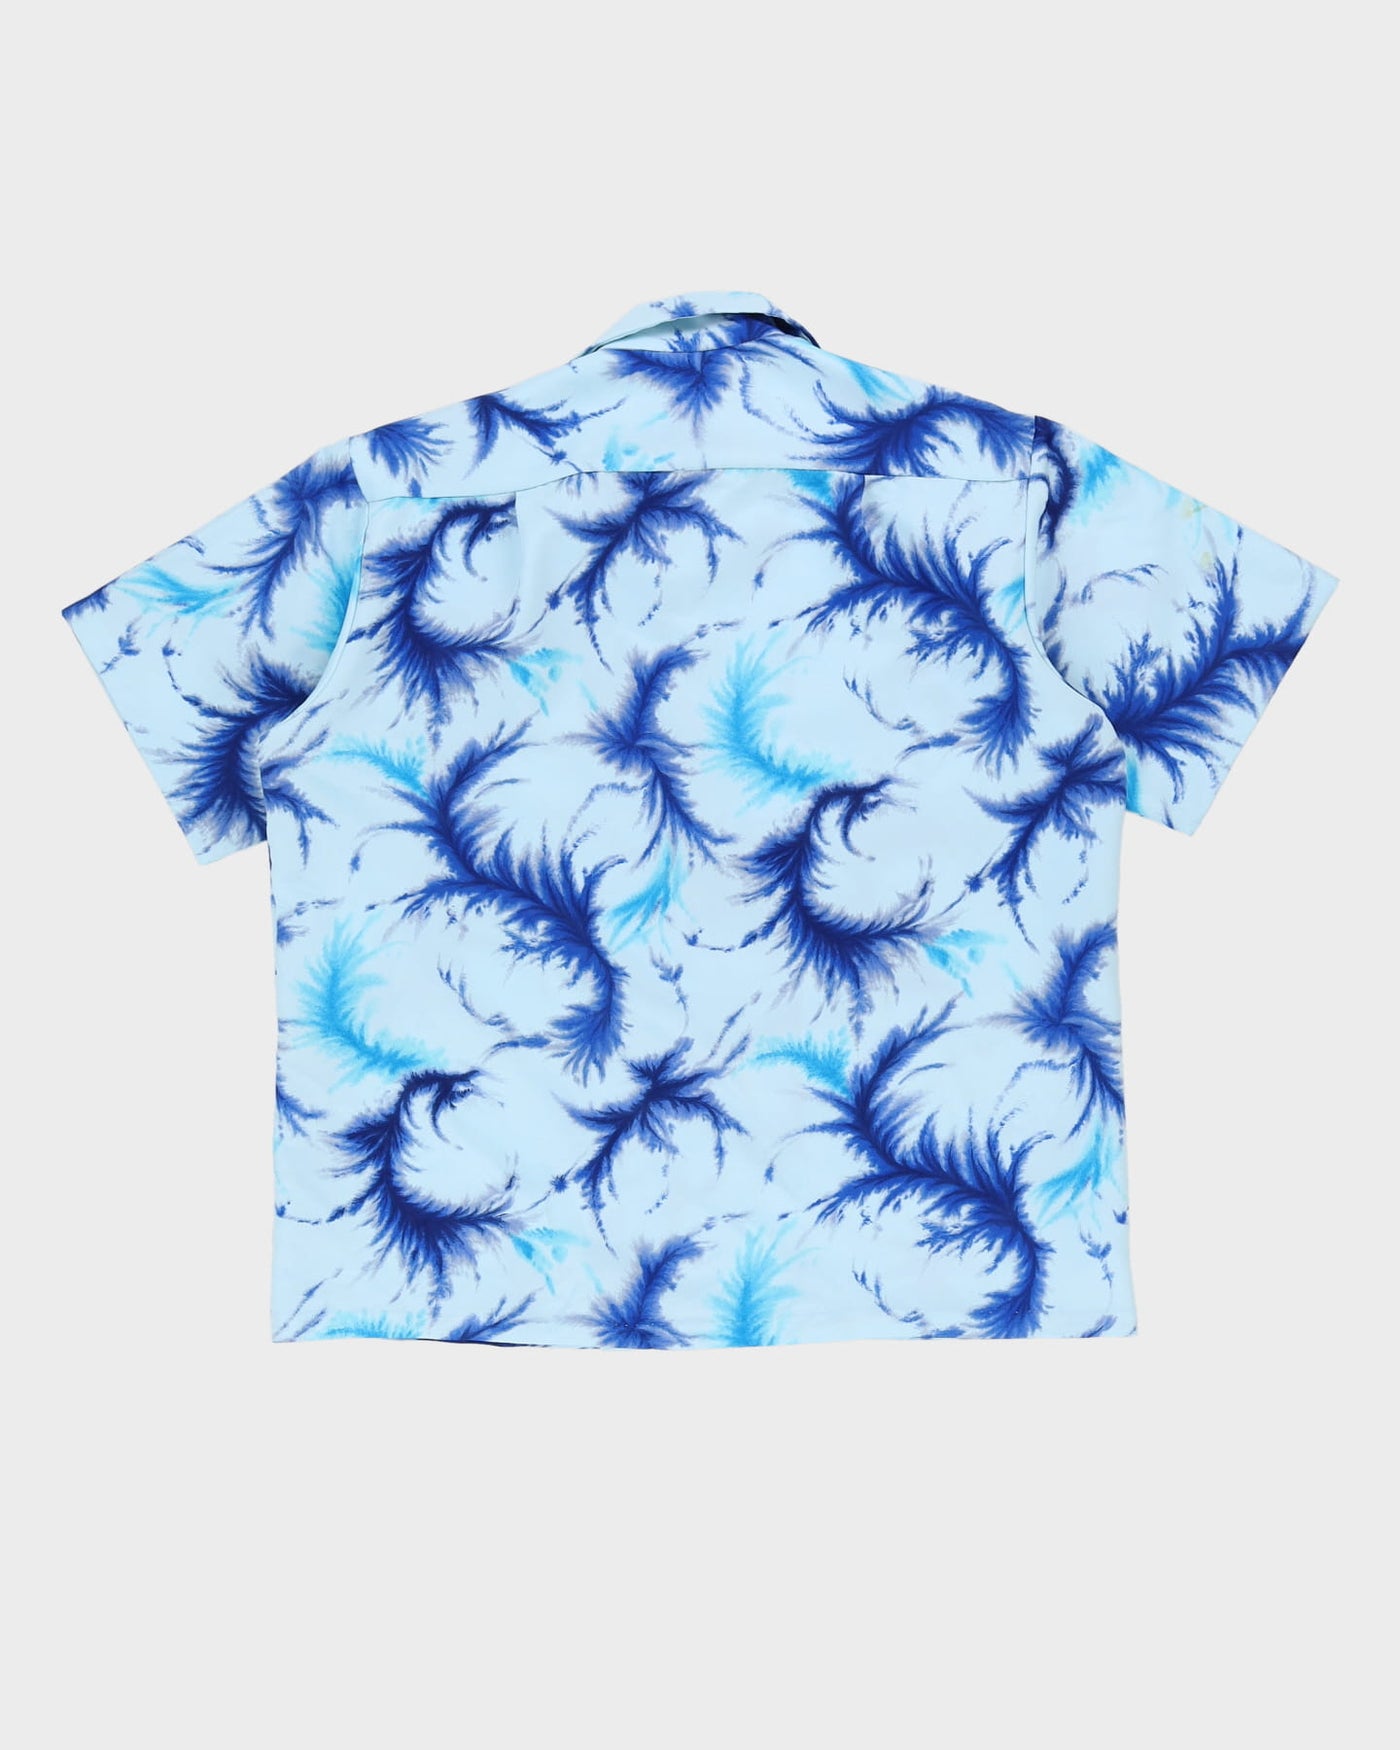 Vintage 70s Blue Hawaiian Shirt - XL